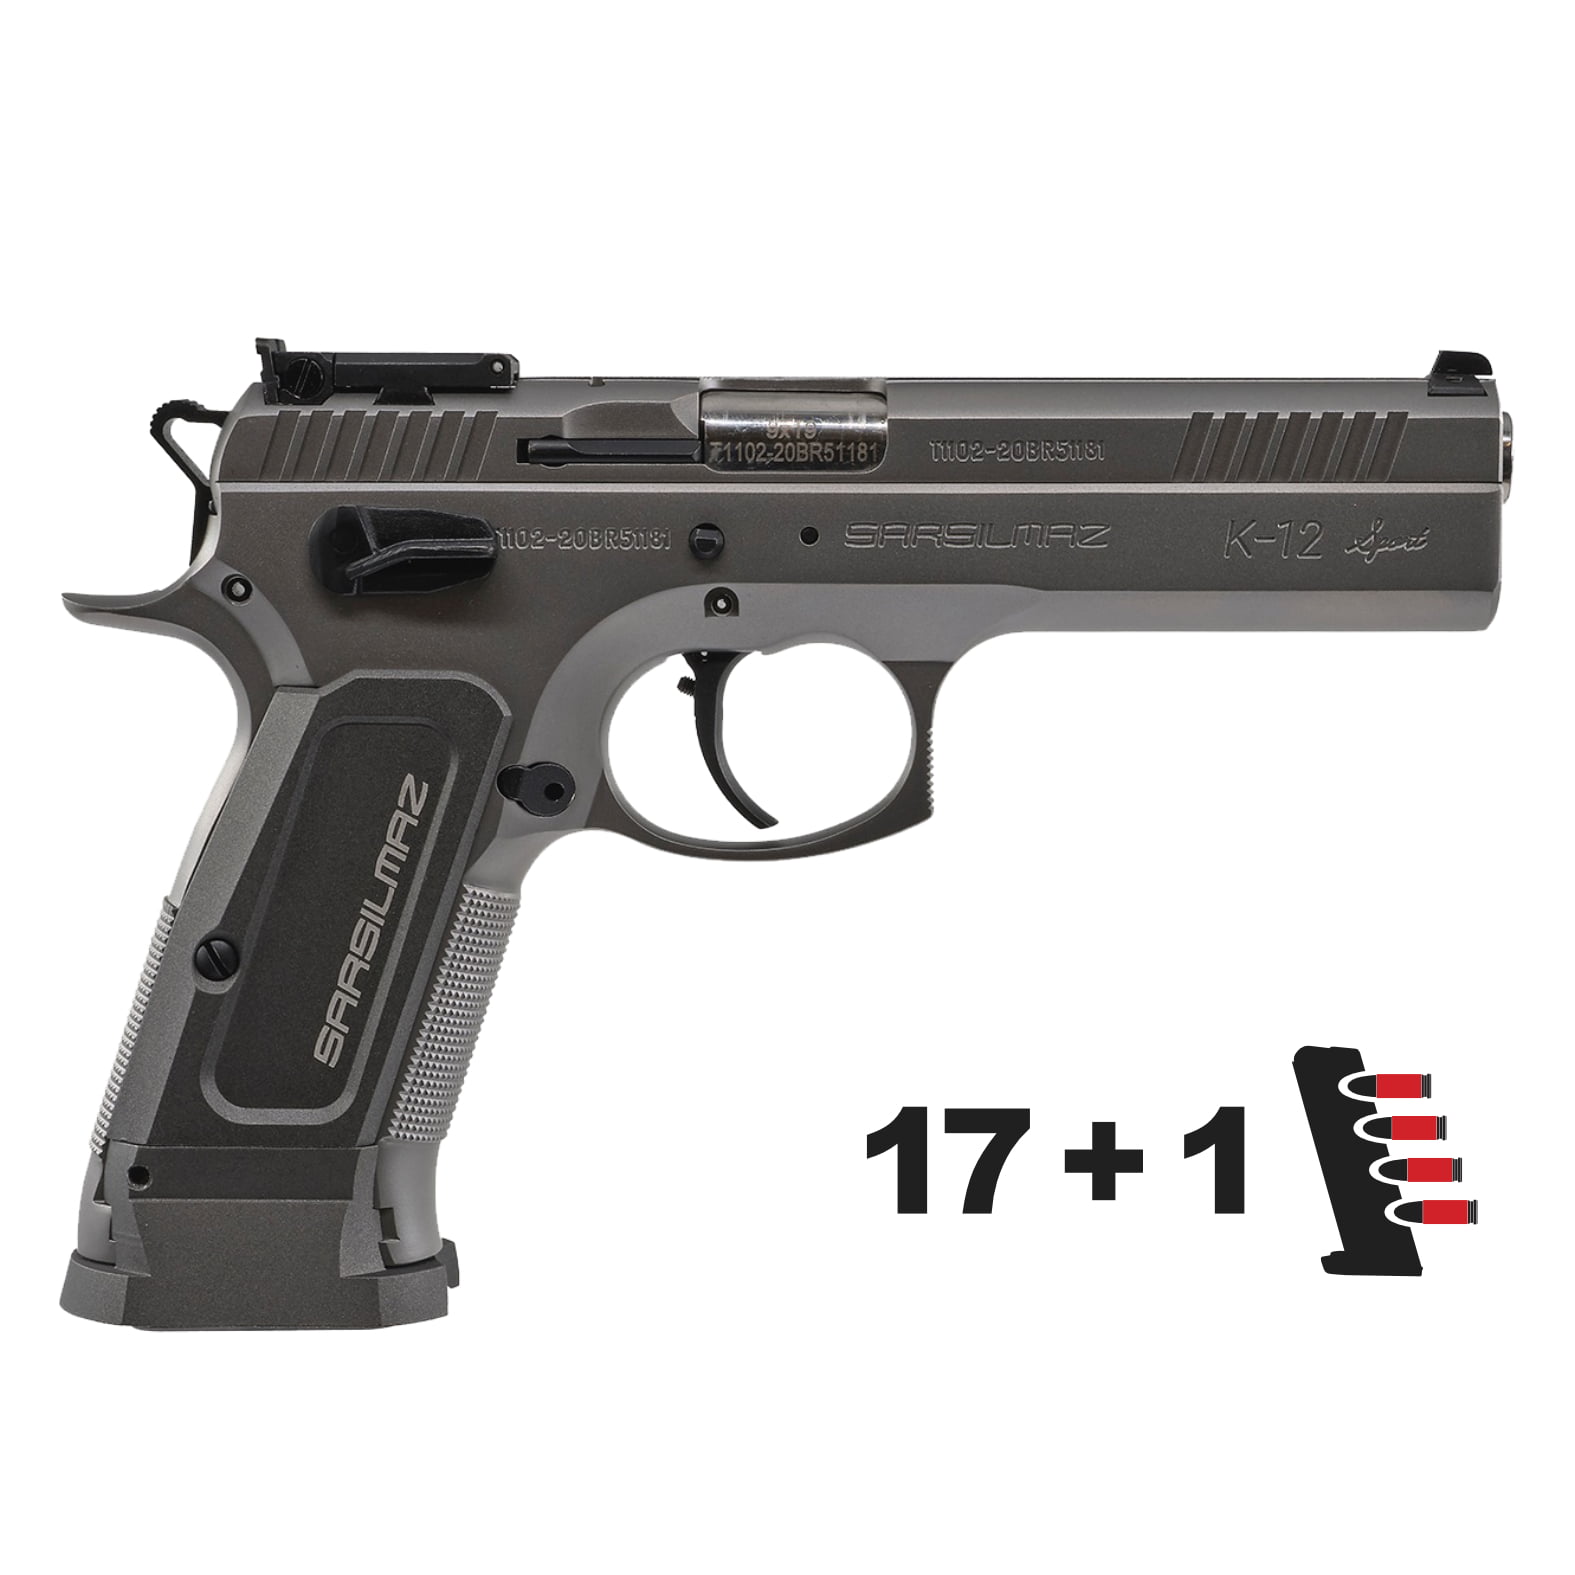 SAR K12 Pistols